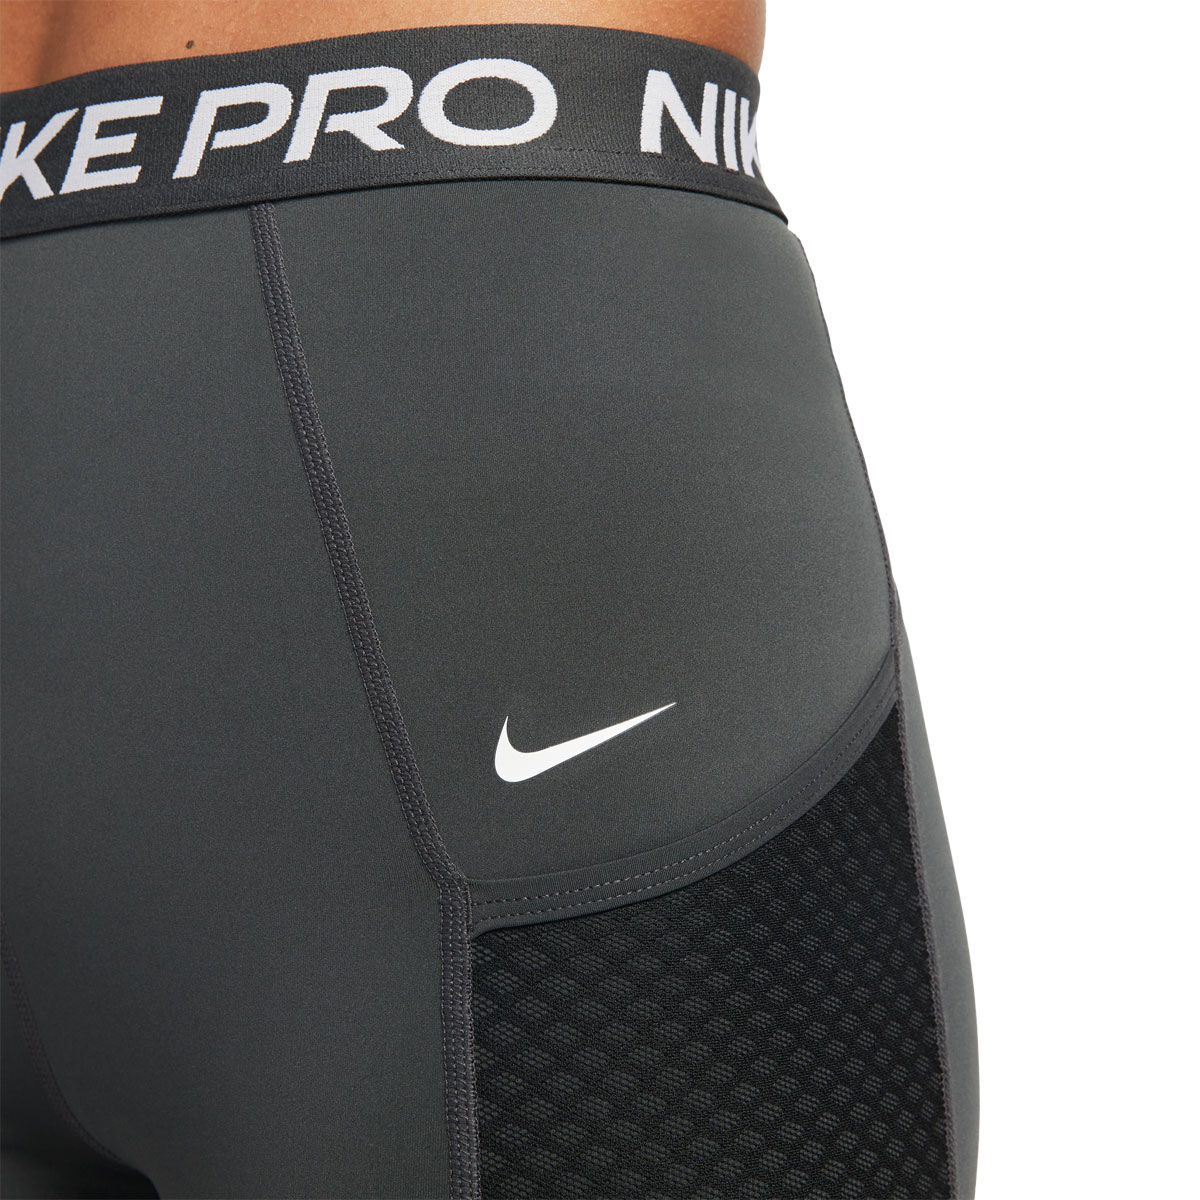 9 pairs of Nike Pro Combat Padded Shorts